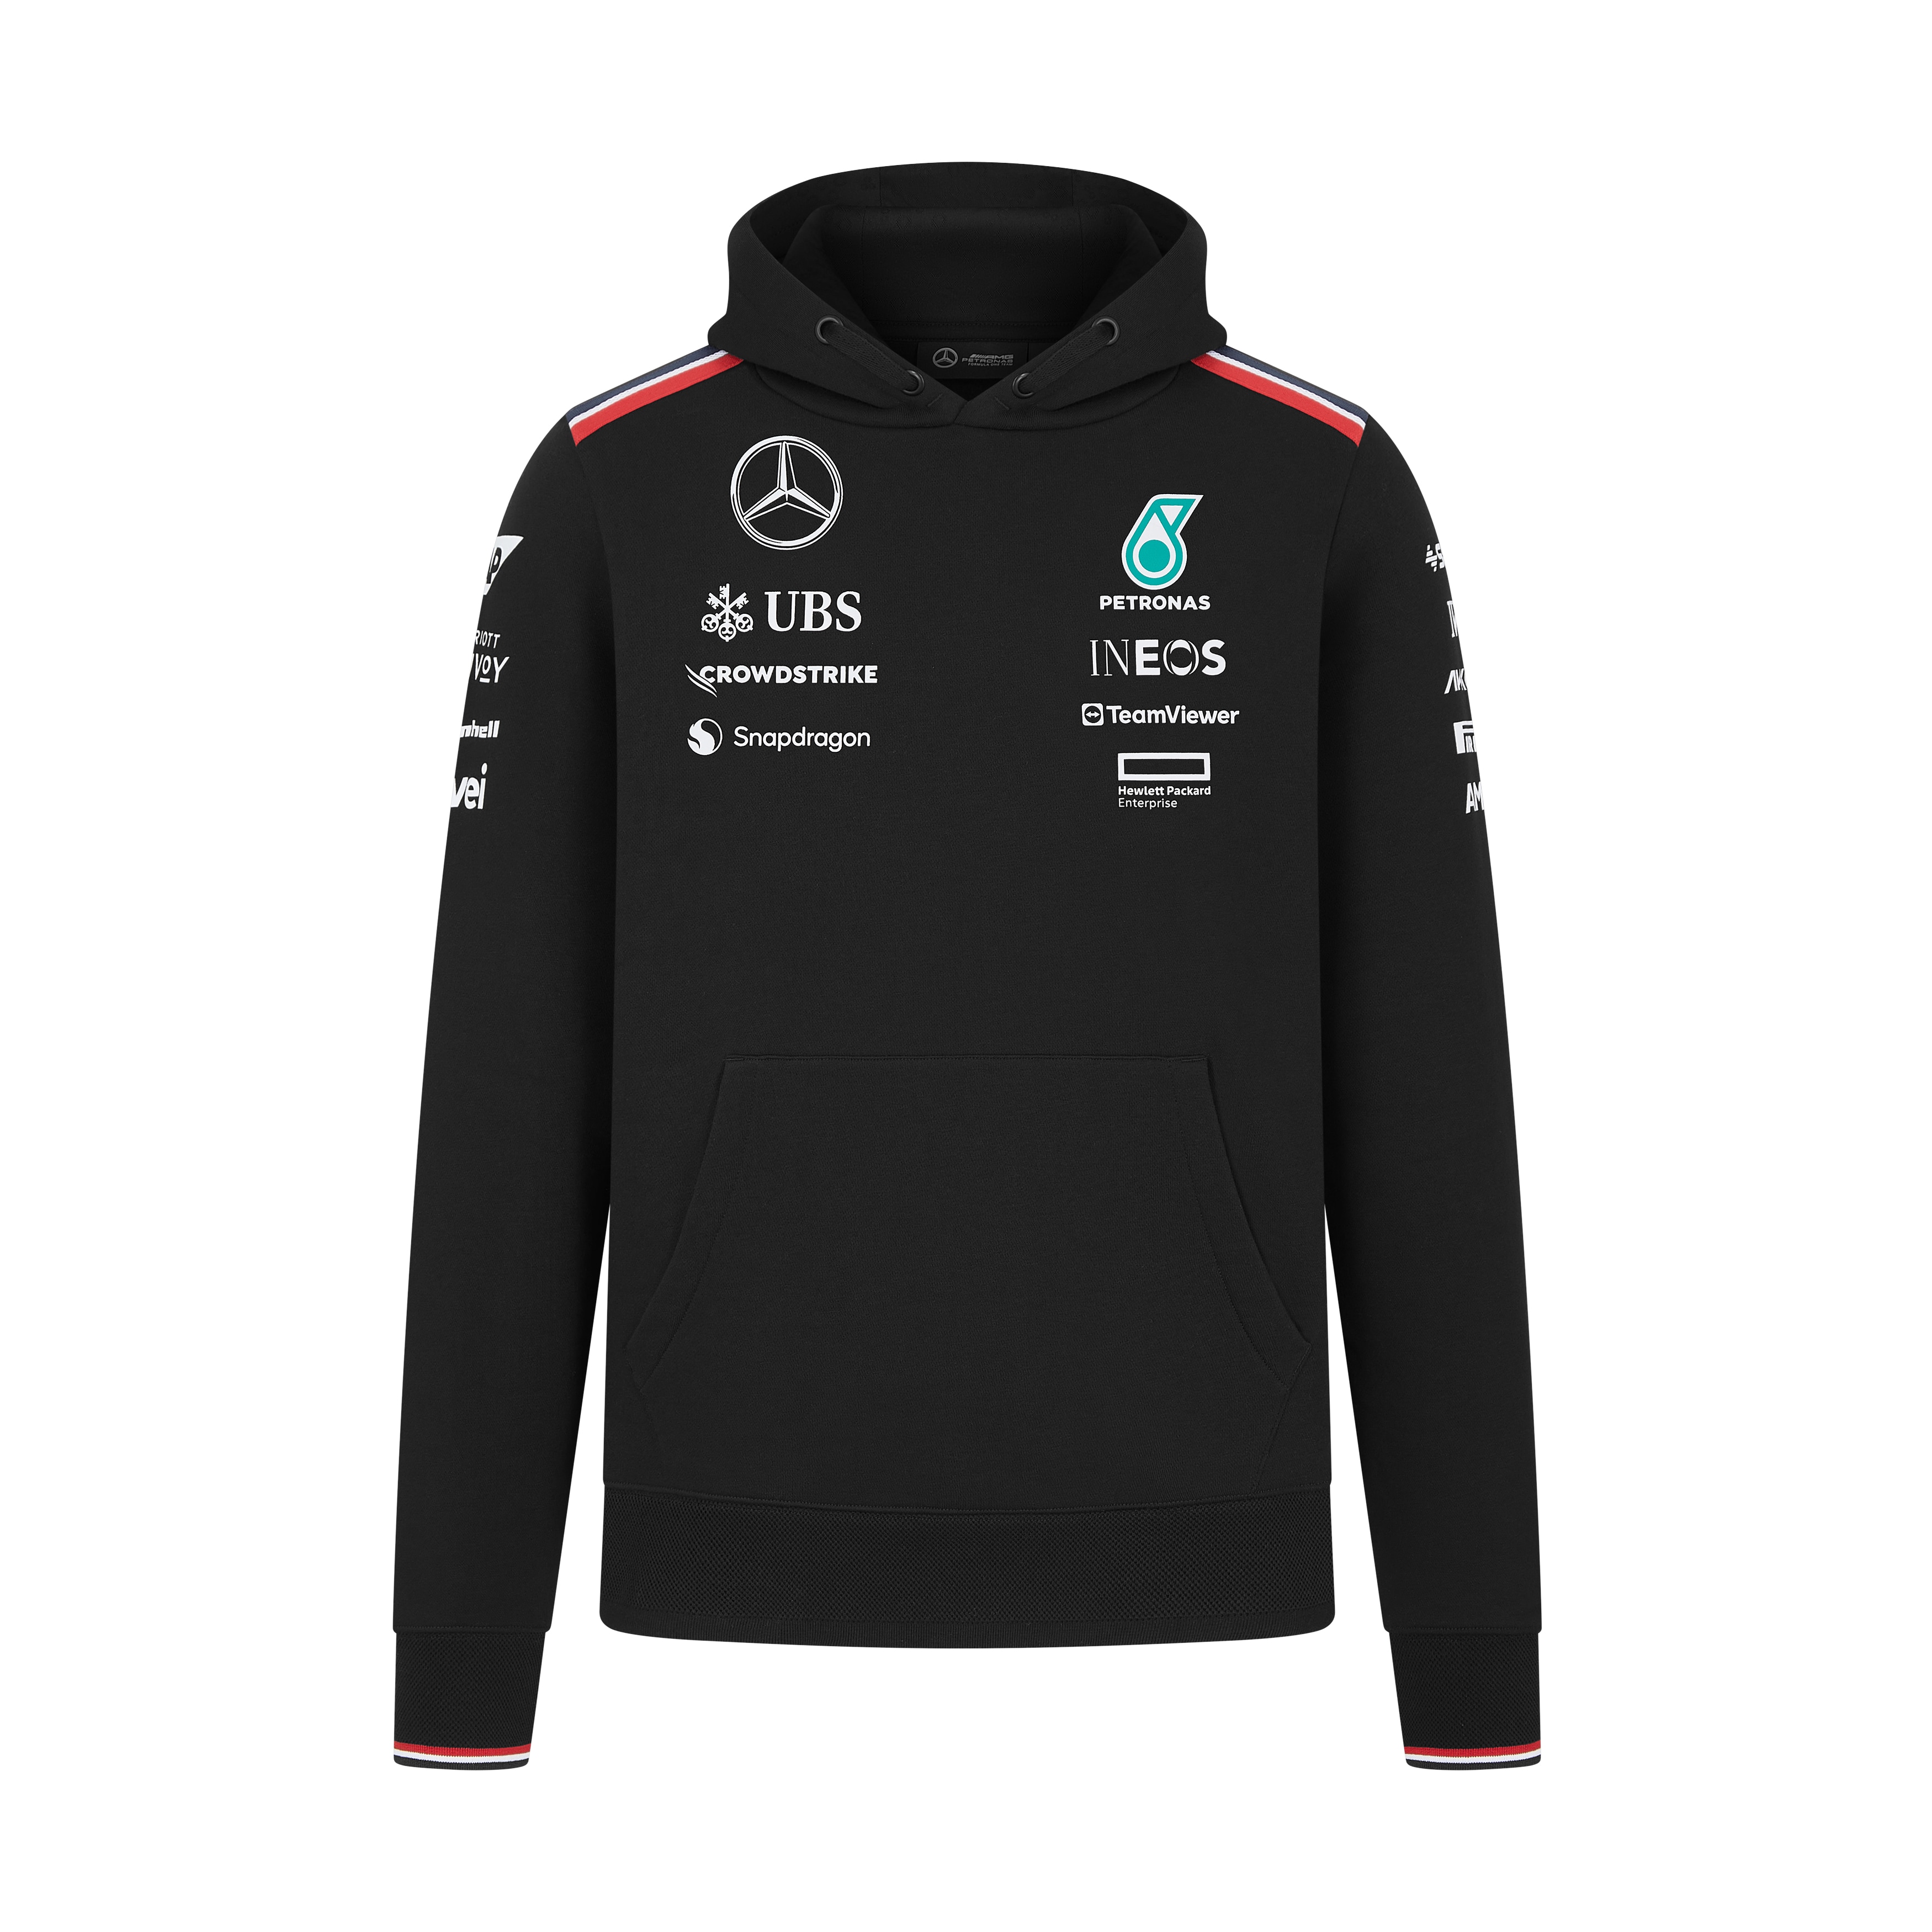 Sweathoody Unisex, Team, Mercedes-AMG F1 - schwarz, XXL